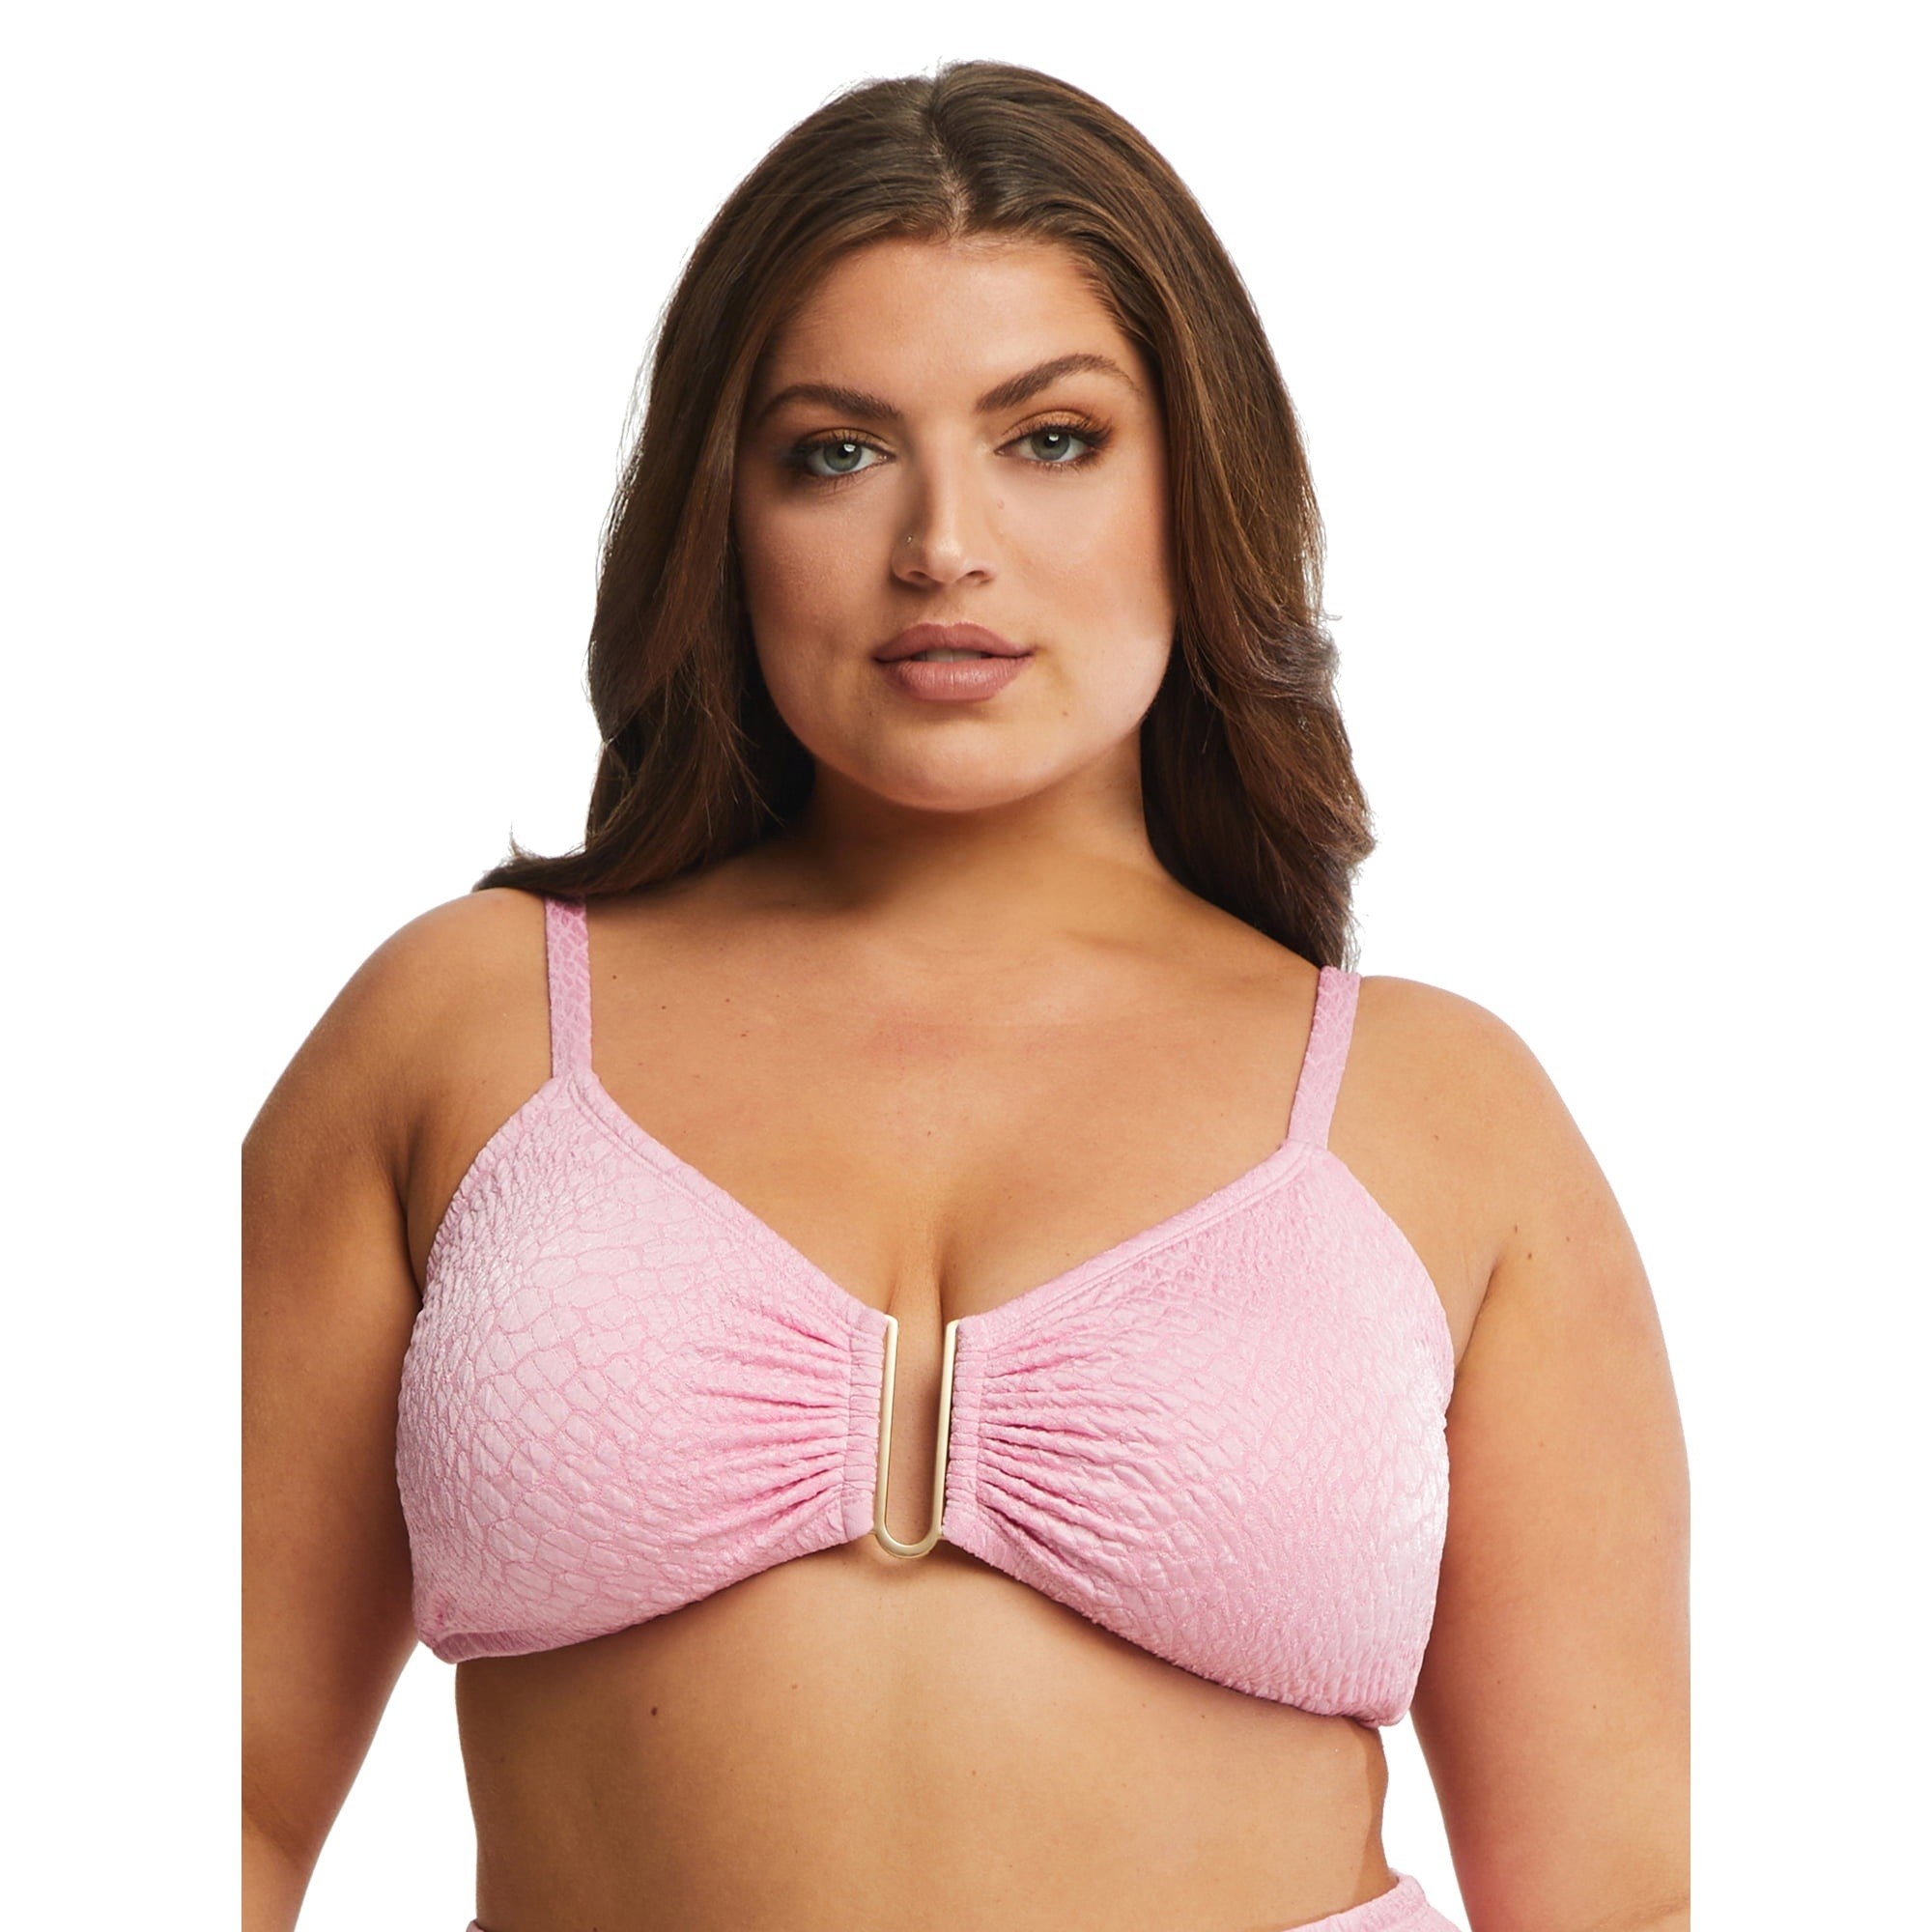 model wearing pink bikini top with u-shaped design